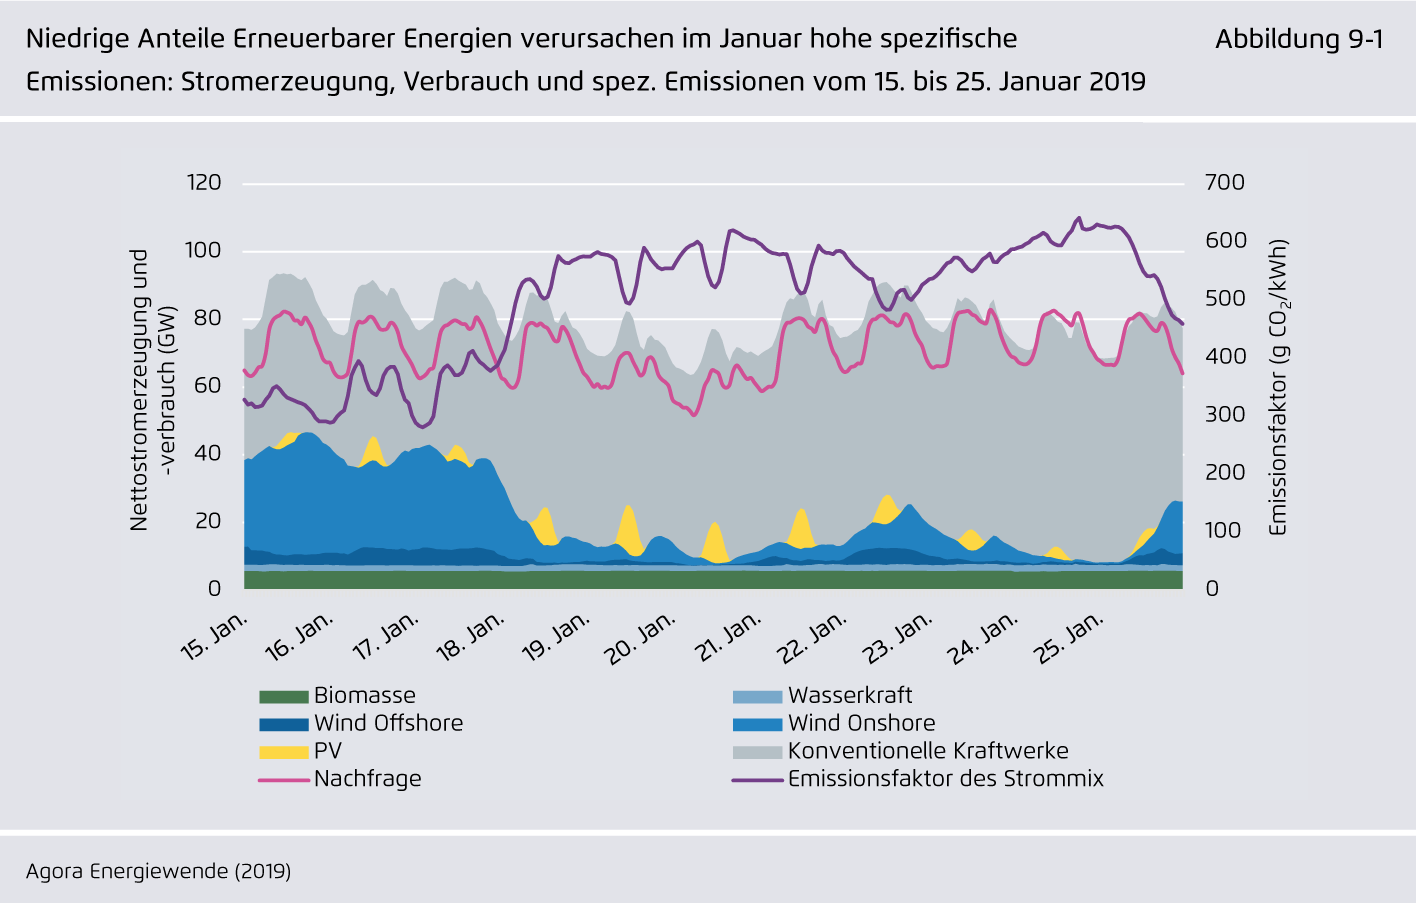 Preview for Niedrige Anteile Erneuerbarer Energien verursachen im Januar hohe spezifische Emissionen: Stromerzeugung, Verbrauch und spez. Emissionen vom 15. bis 25. Januar 2019